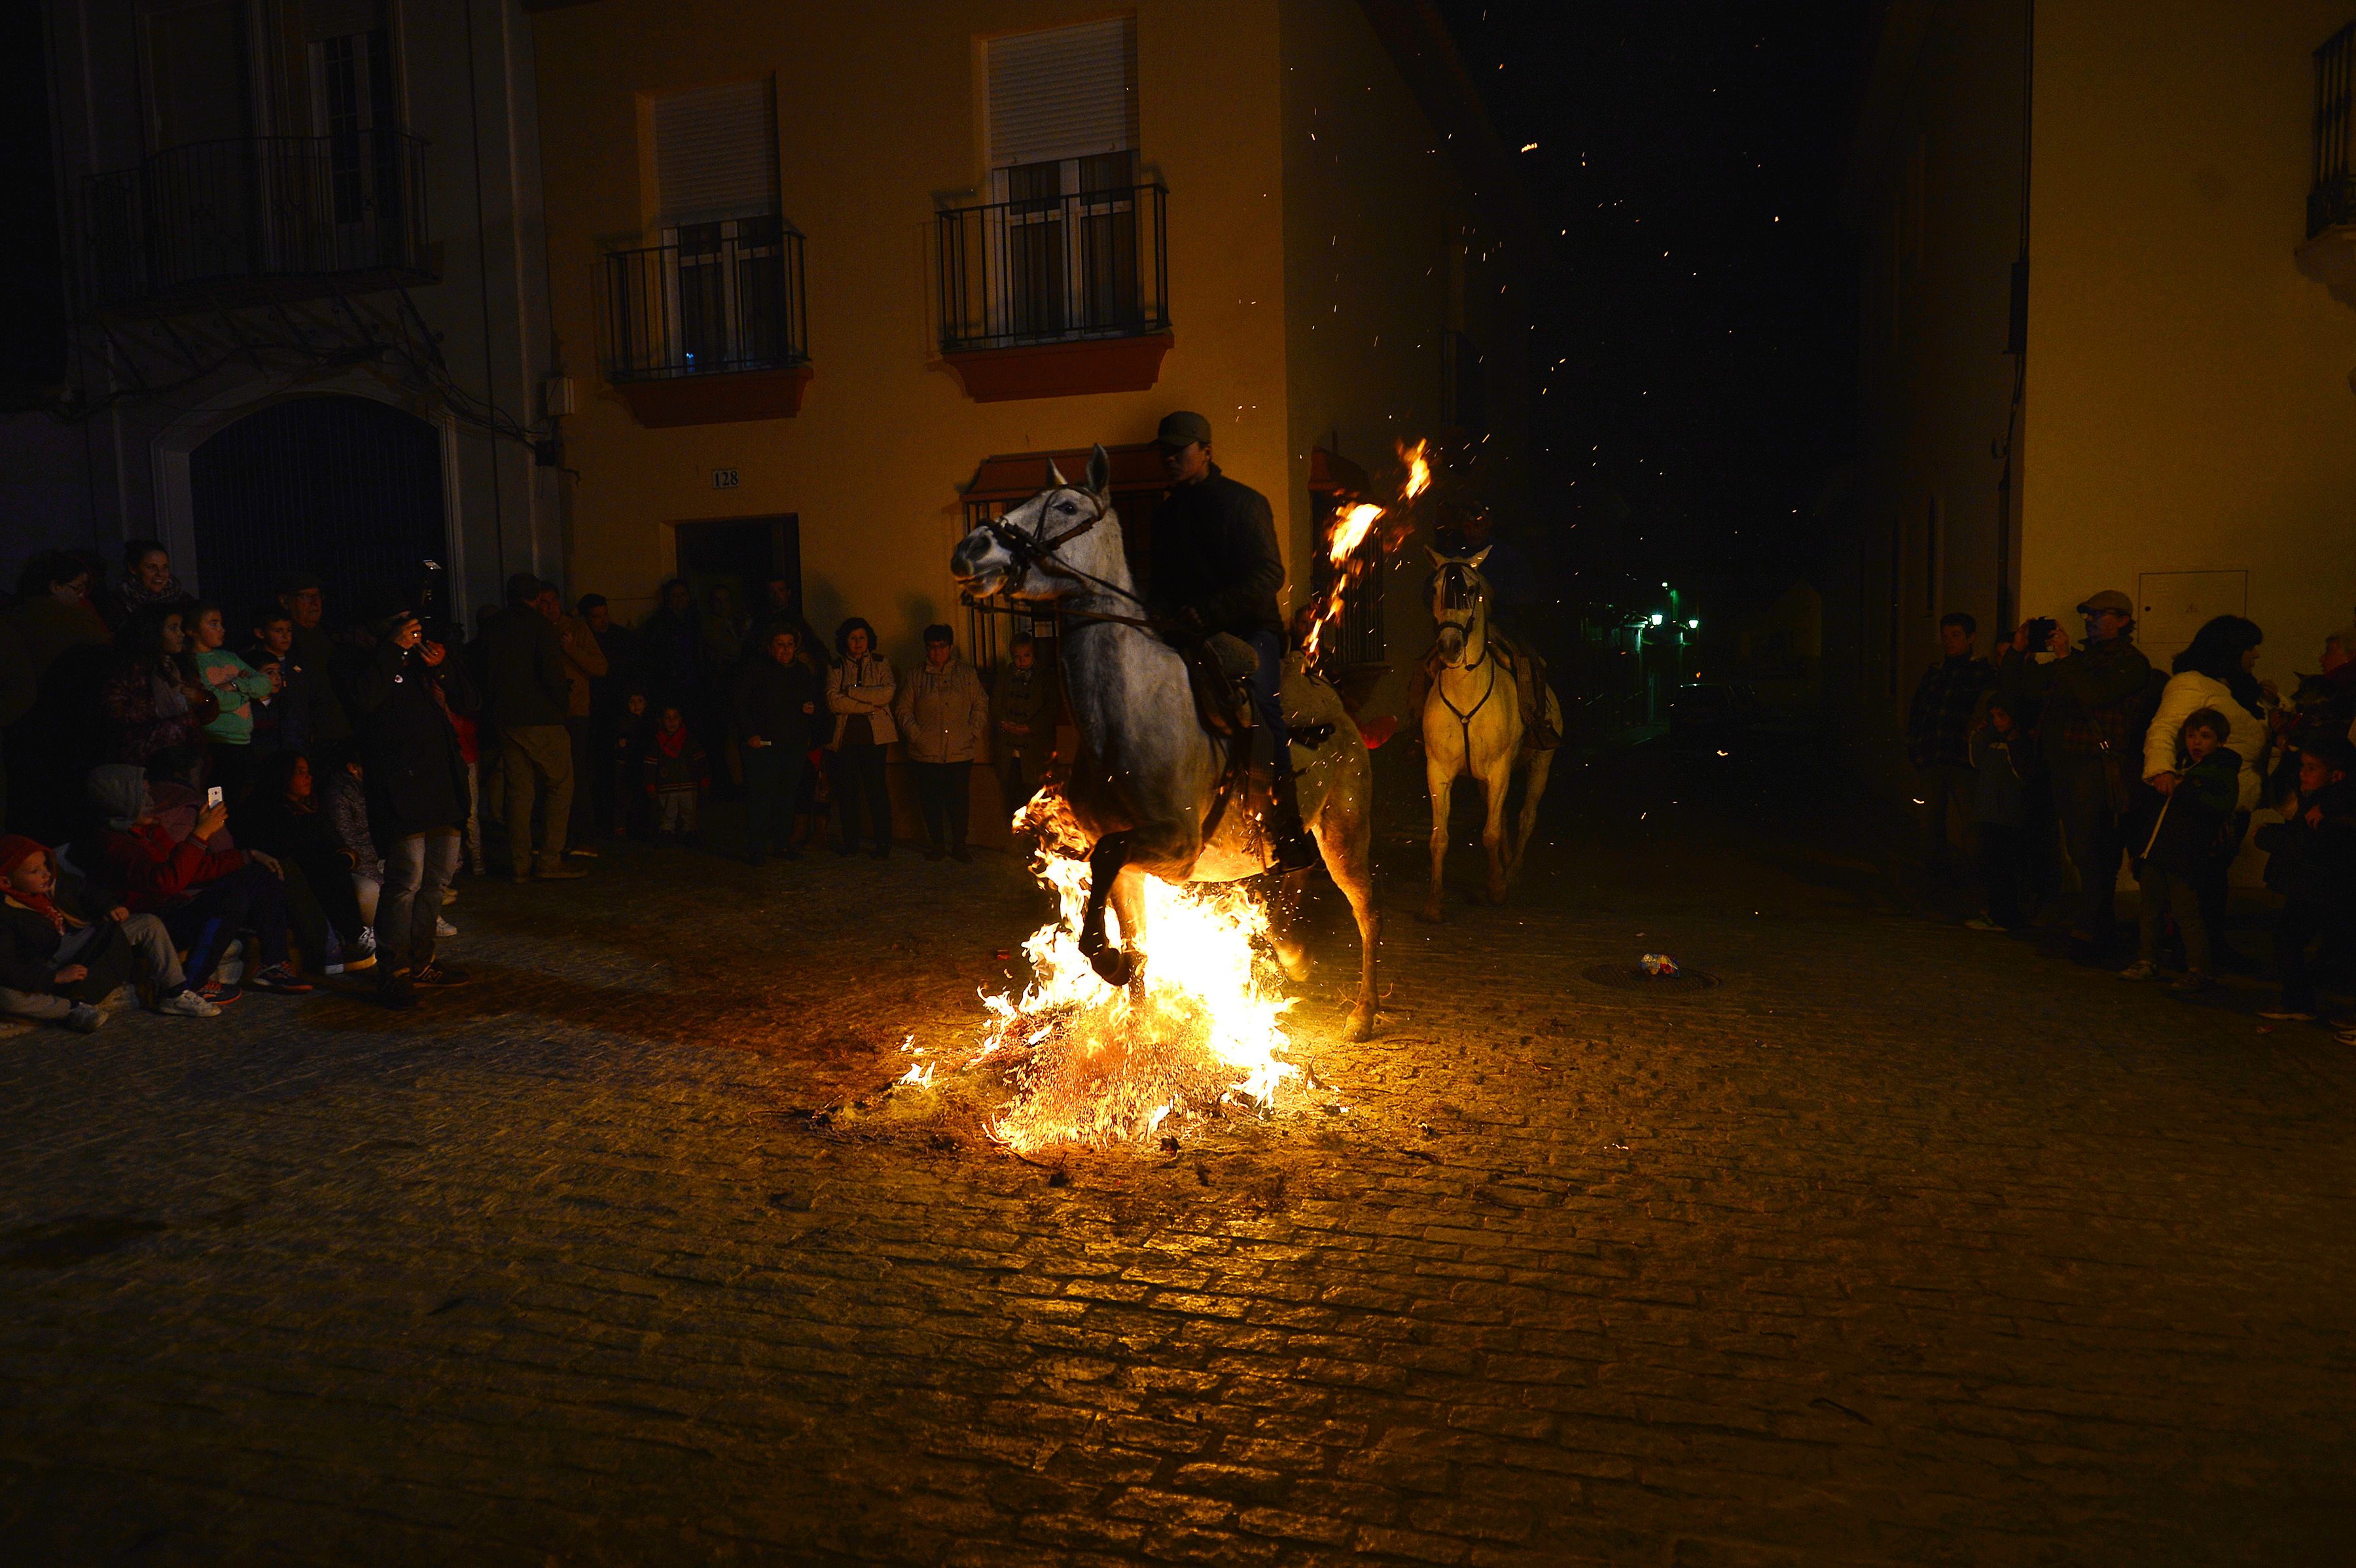 أحد الخيول يقفز فوق النيران